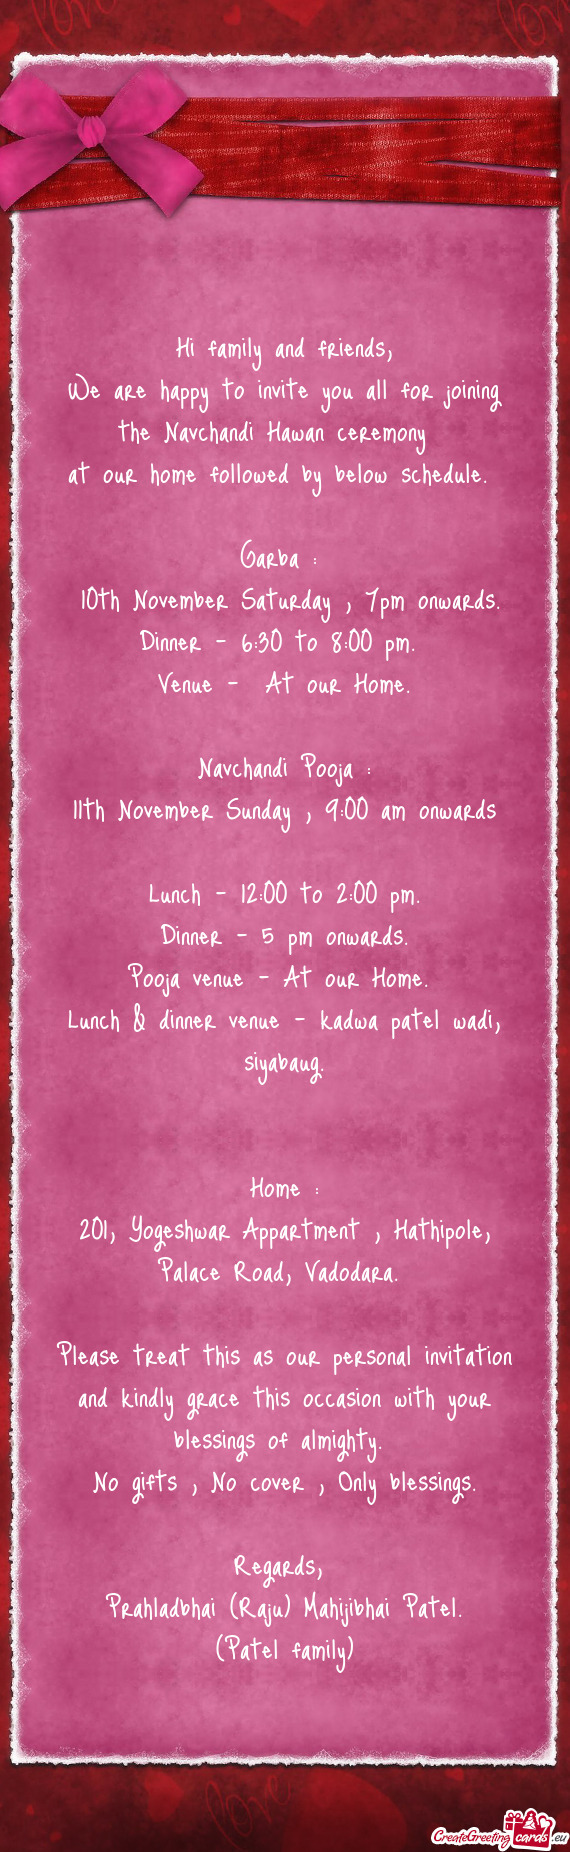 10th November Saturday , 7pm onwards